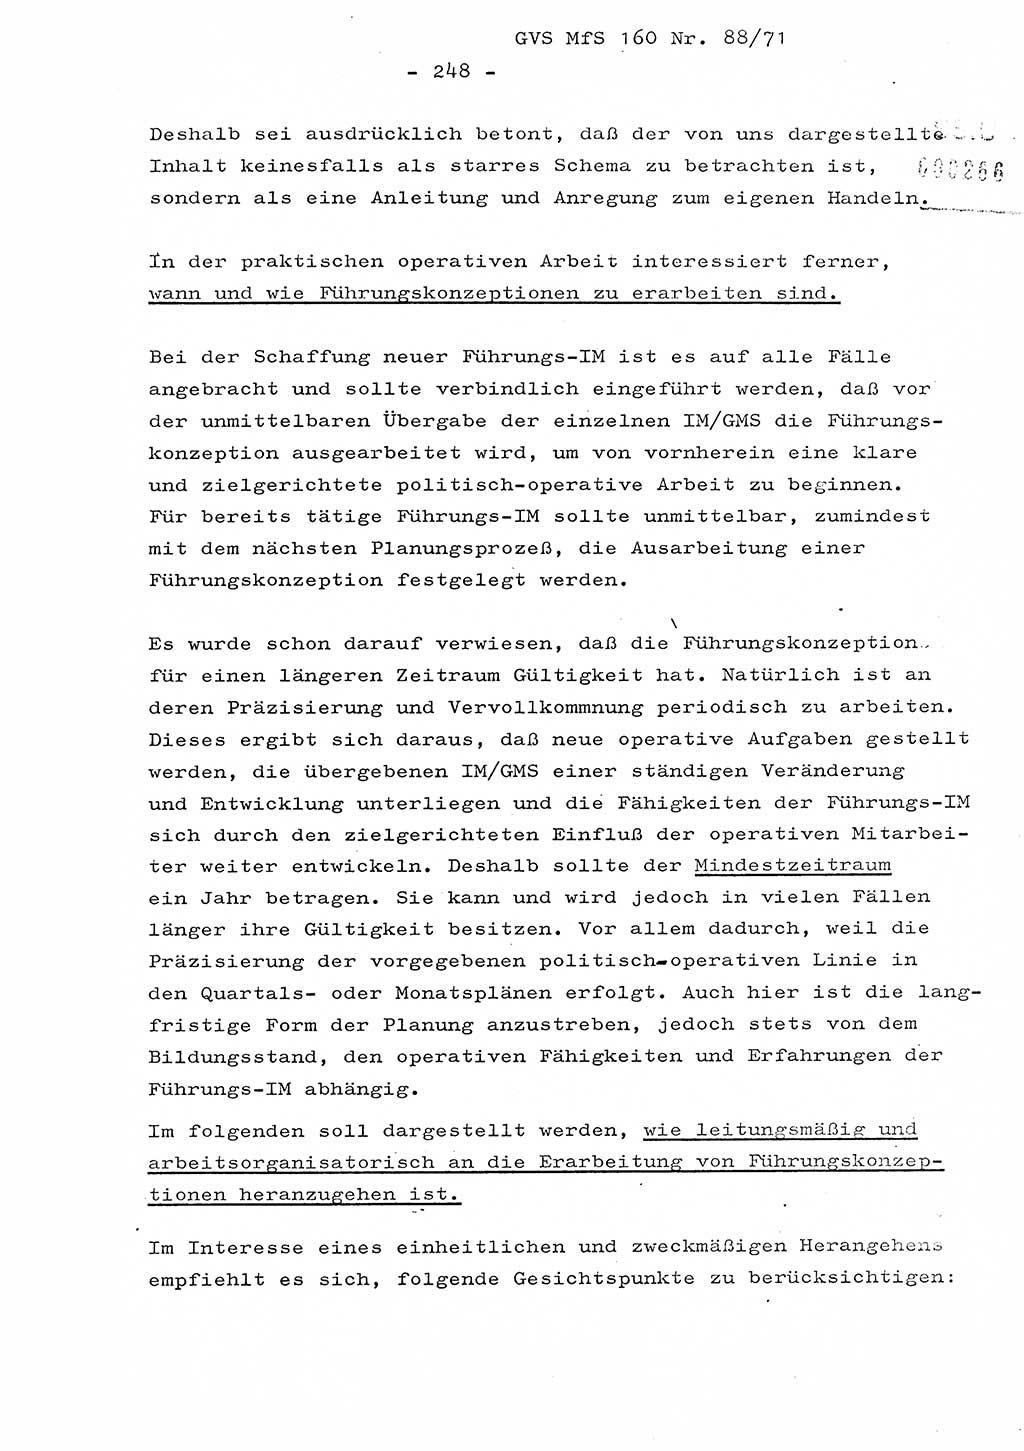 Dissertation Oberstleutnant Josef Schwarz (BV Schwerin), Major Fritz Amm (JHS), Hauptmann Peter Gräßler (JHS), Ministerium für Staatssicherheit (MfS) [Deutsche Demokratische Republik (DDR)], Juristische Hochschule (JHS), Geheime Verschlußsache (GVS) 160-88/71, Potsdam 1972, Seite 248 (Diss. MfS DDR JHS GVS 160-88/71 1972, S. 248)